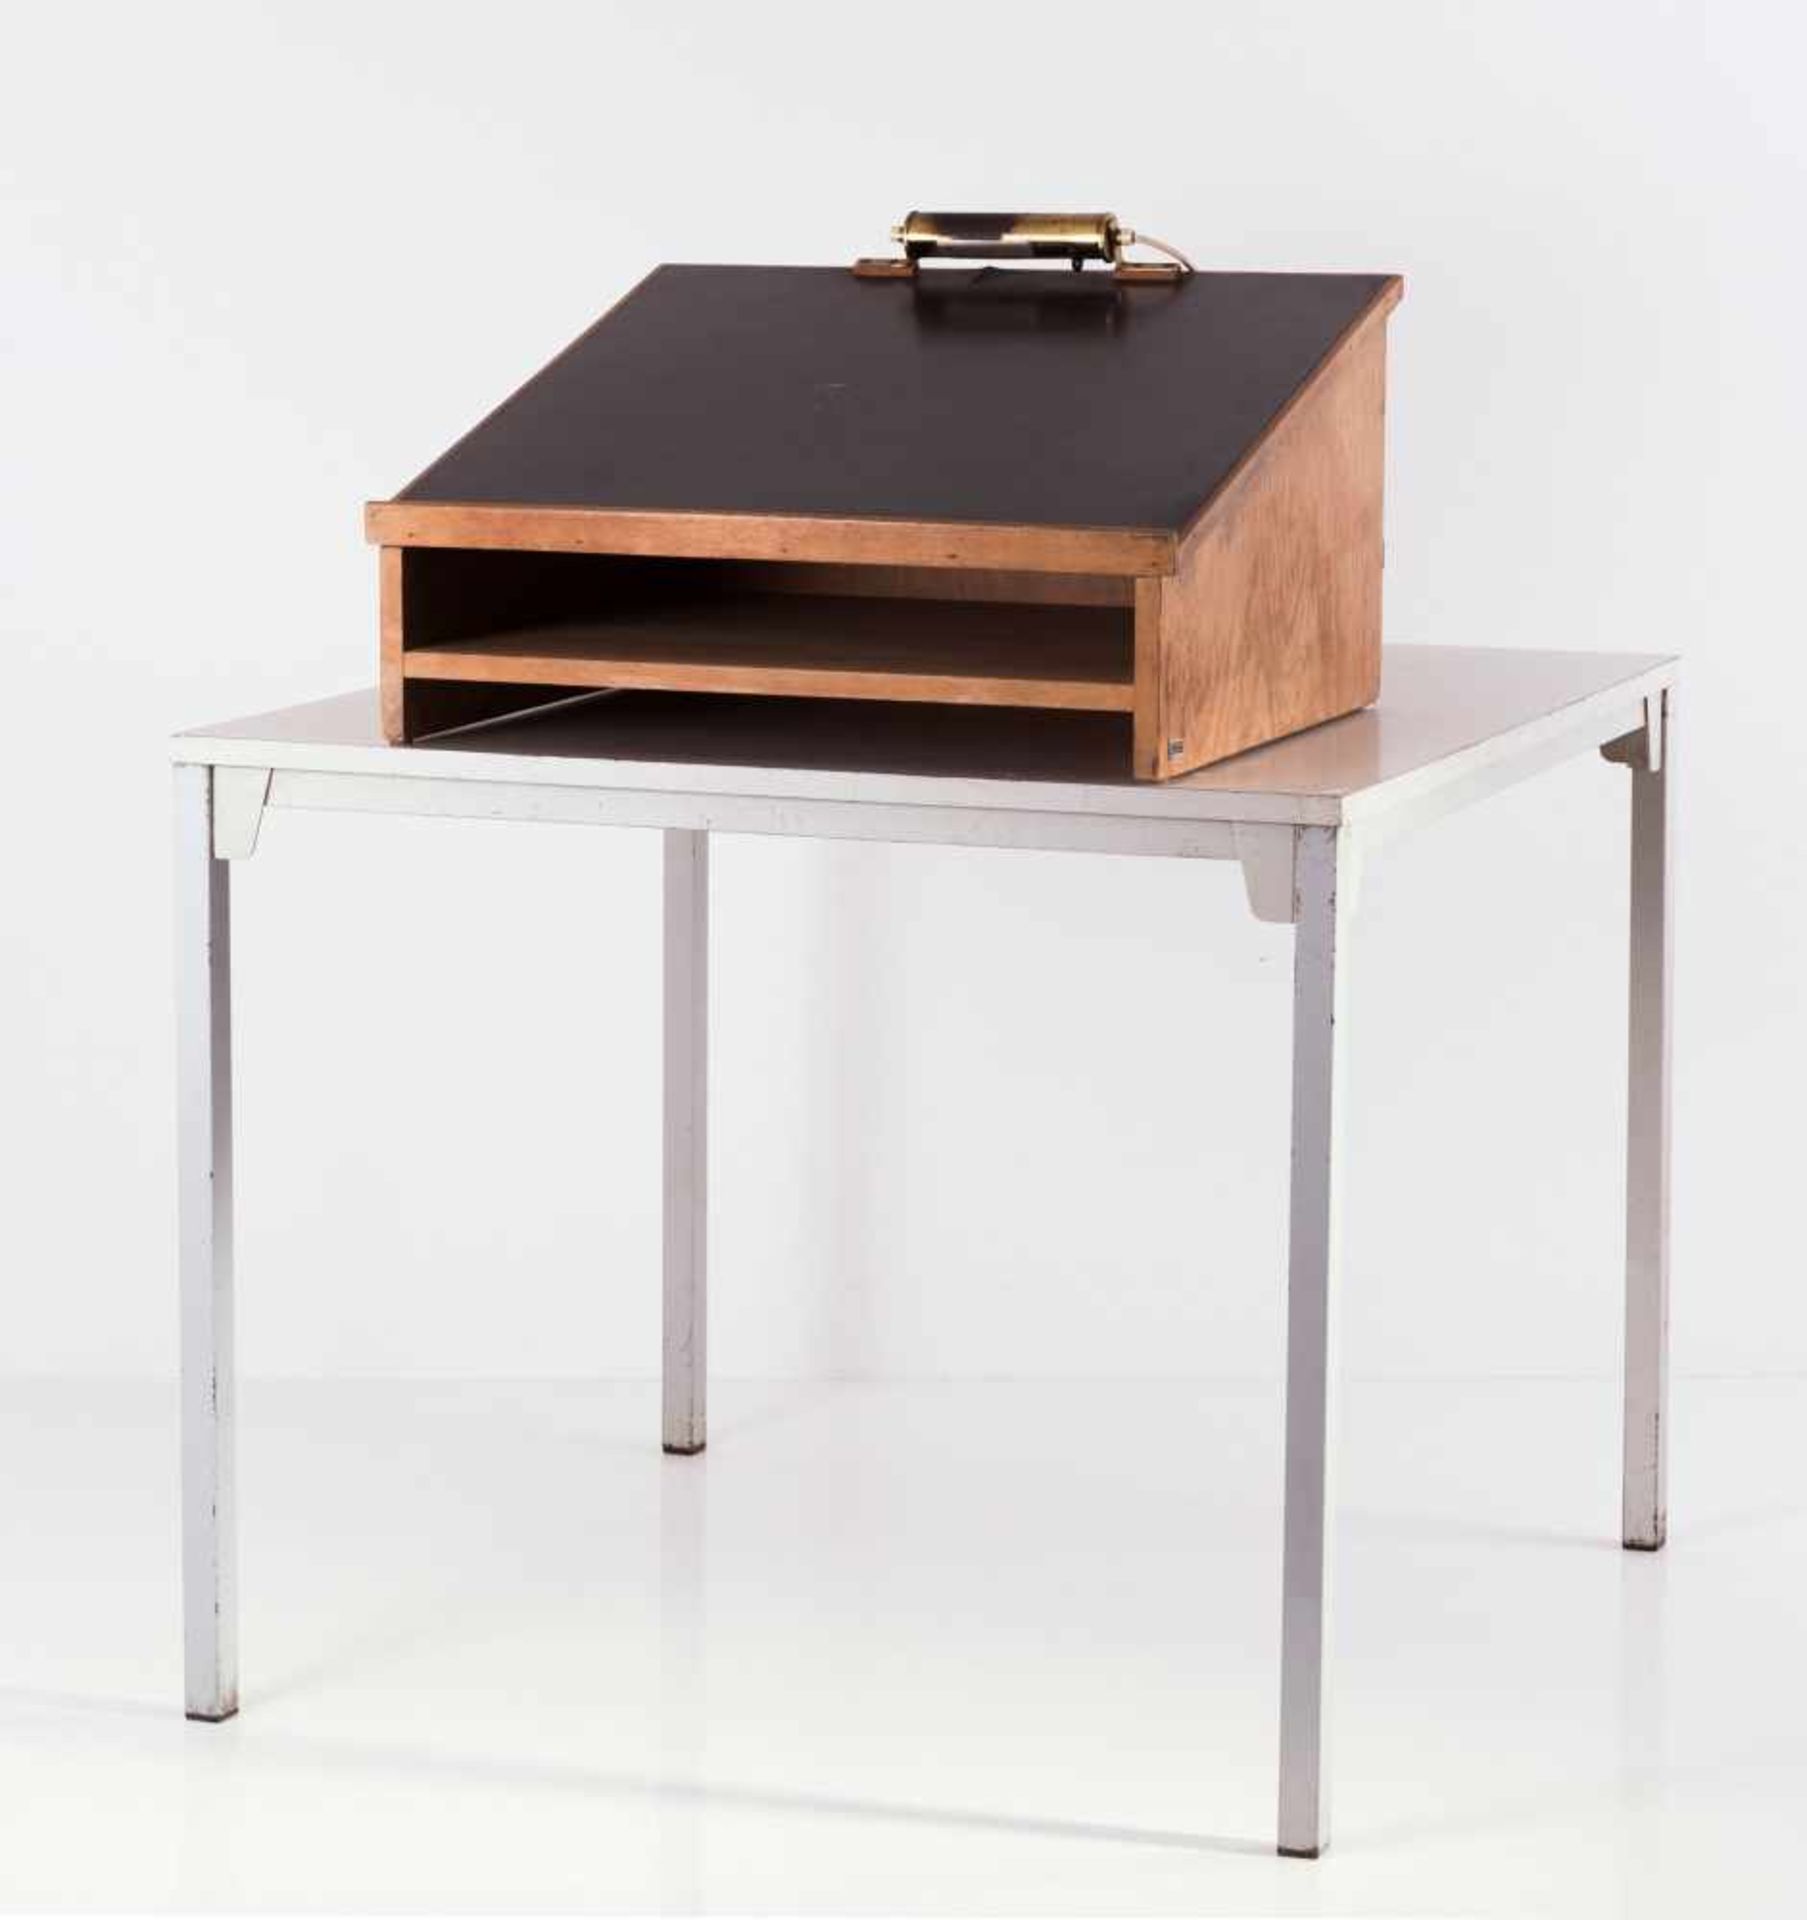 Ferdinand Kramer Tisch 'knock down - KD' mit Tischpult aus dem Möbelprogramm der Johann-Wolfgang-